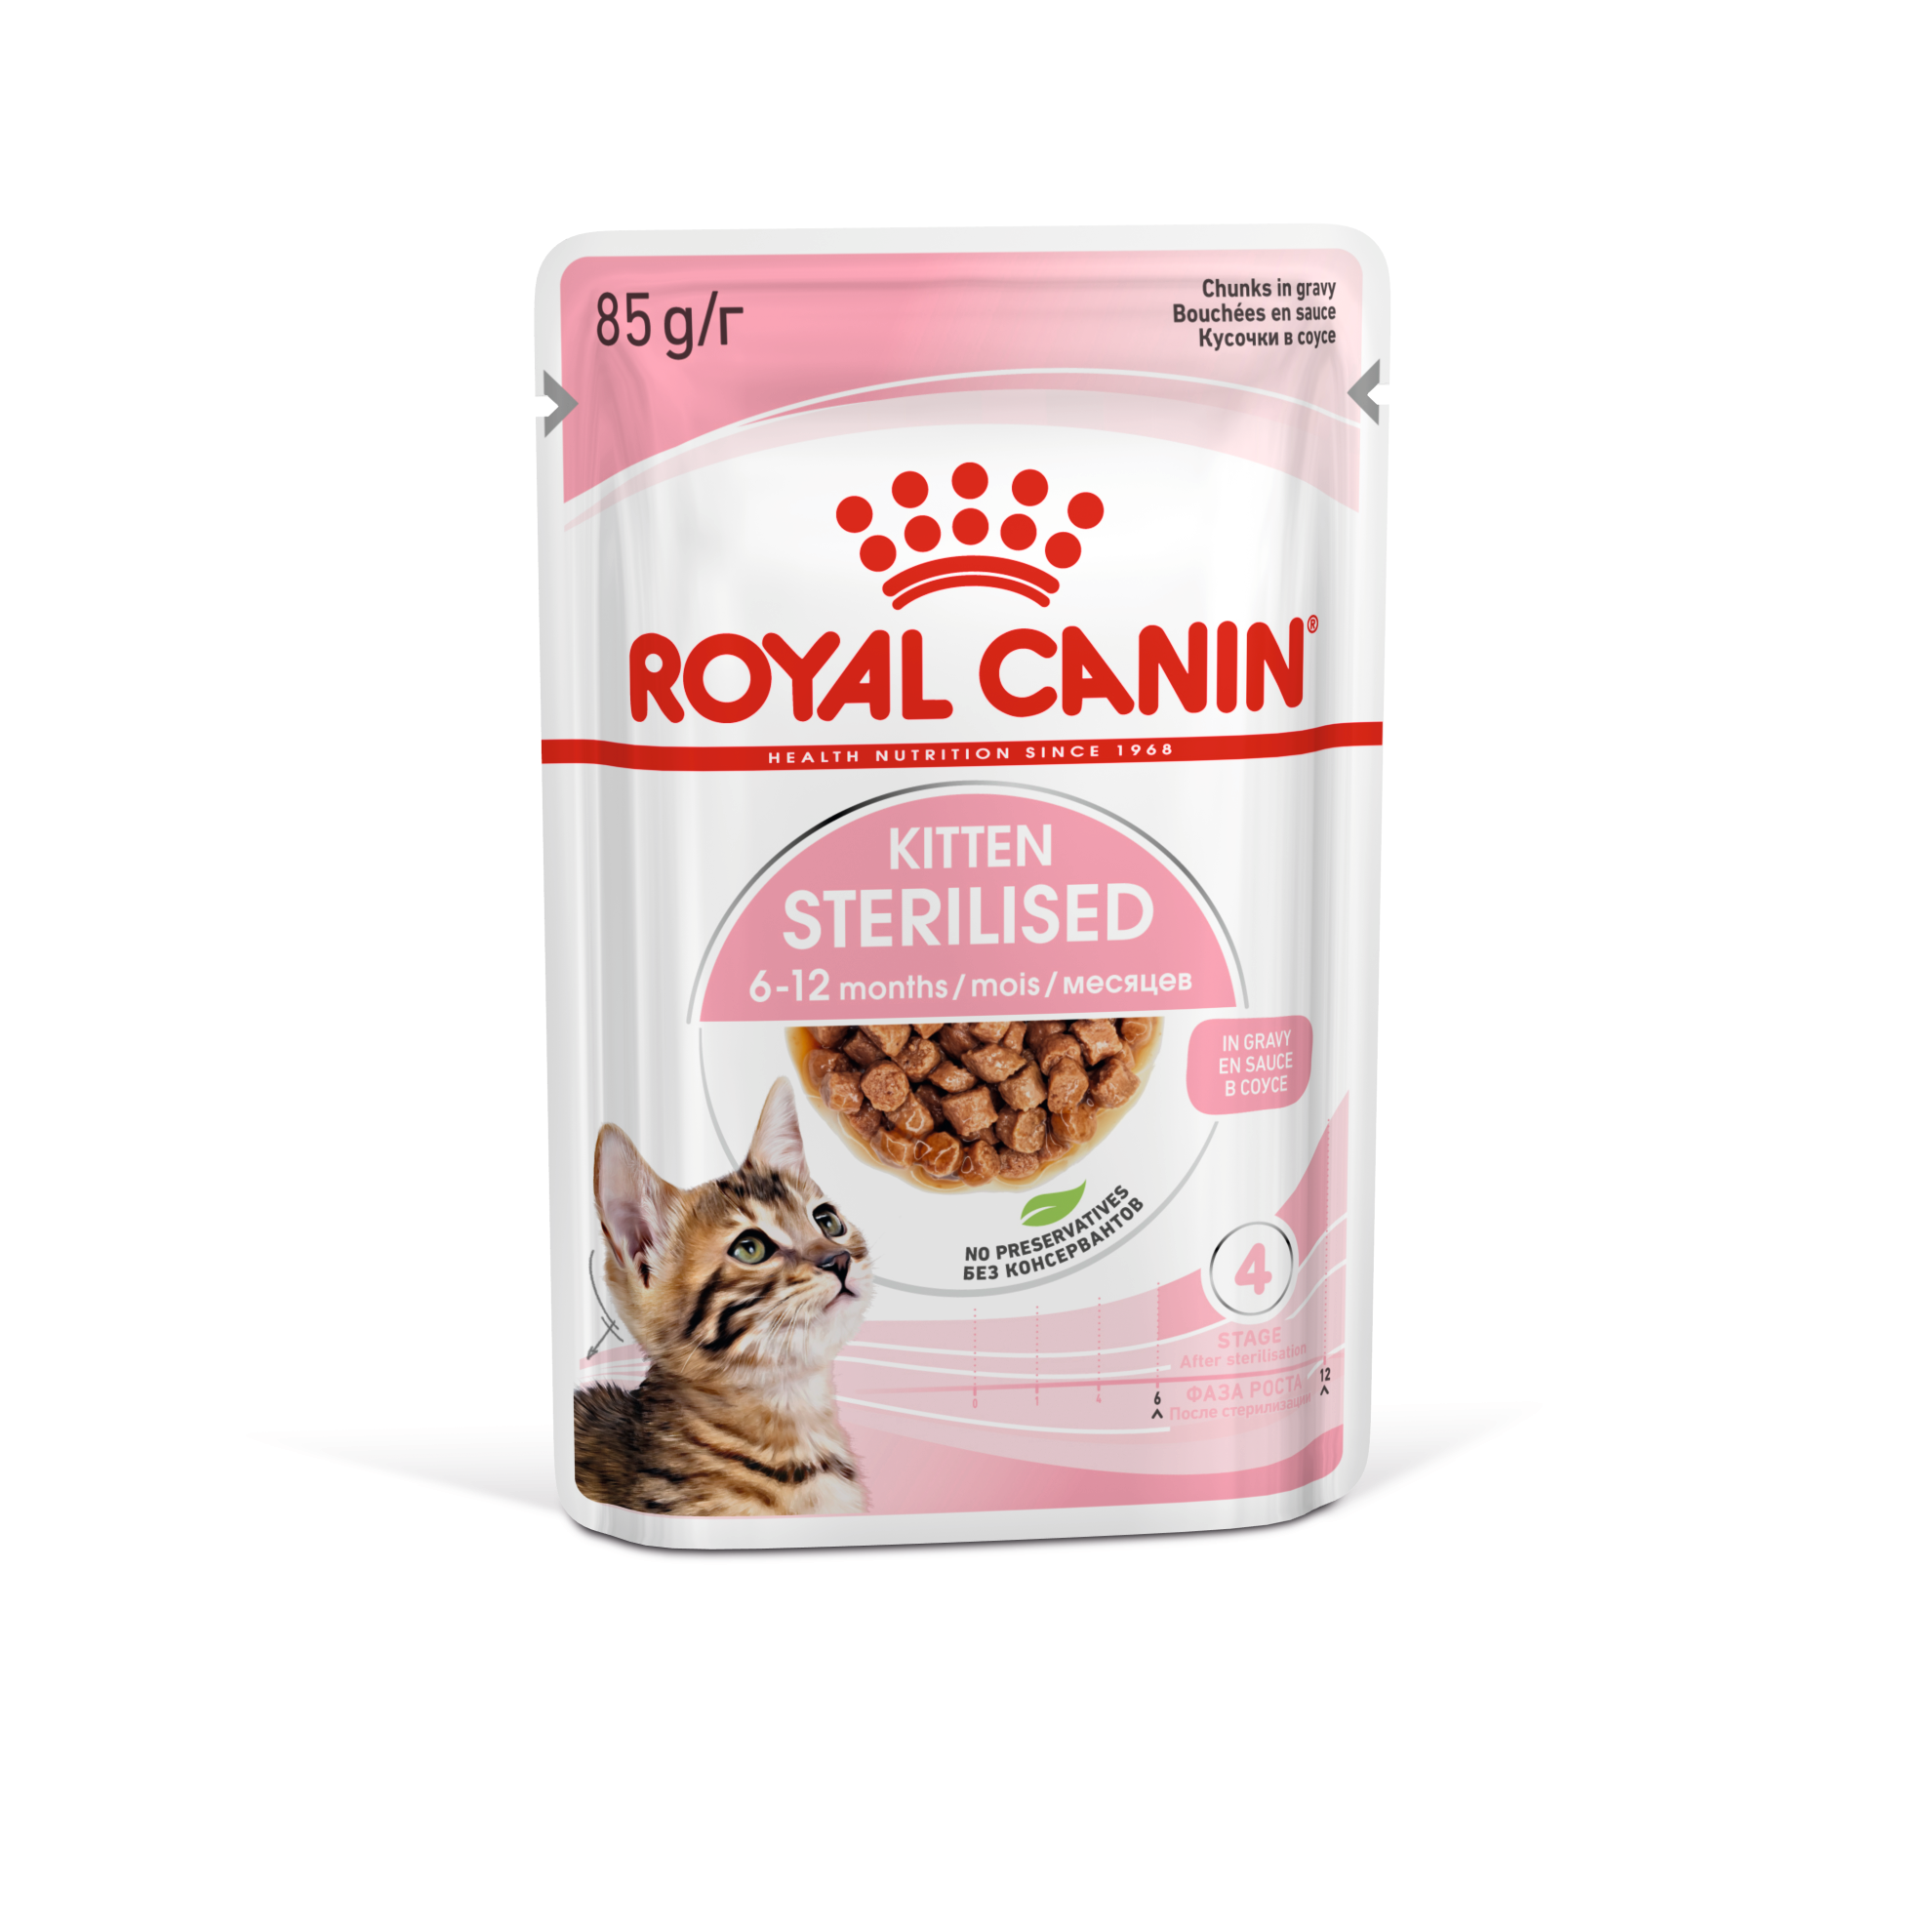 Royal Canin là thương hiệu thức ăn mèo cao cấp được đánh giá cao bởi chất lượng và độ an toàn. Những chiếc túi thức ăn nhỏ gọn được thiết kế đẹp mắt, dễ dàng bảo quản và đảm bảo cung cấp đầy đủ dinh dưỡng cho thú cưng yêu của bạn. Để hiểu thêm về sản phẩm này, hãy xem ảnh đính kèm và cùng đón nhận những kiến ​​thức hữu ích về chăm sóc thú cưng. 